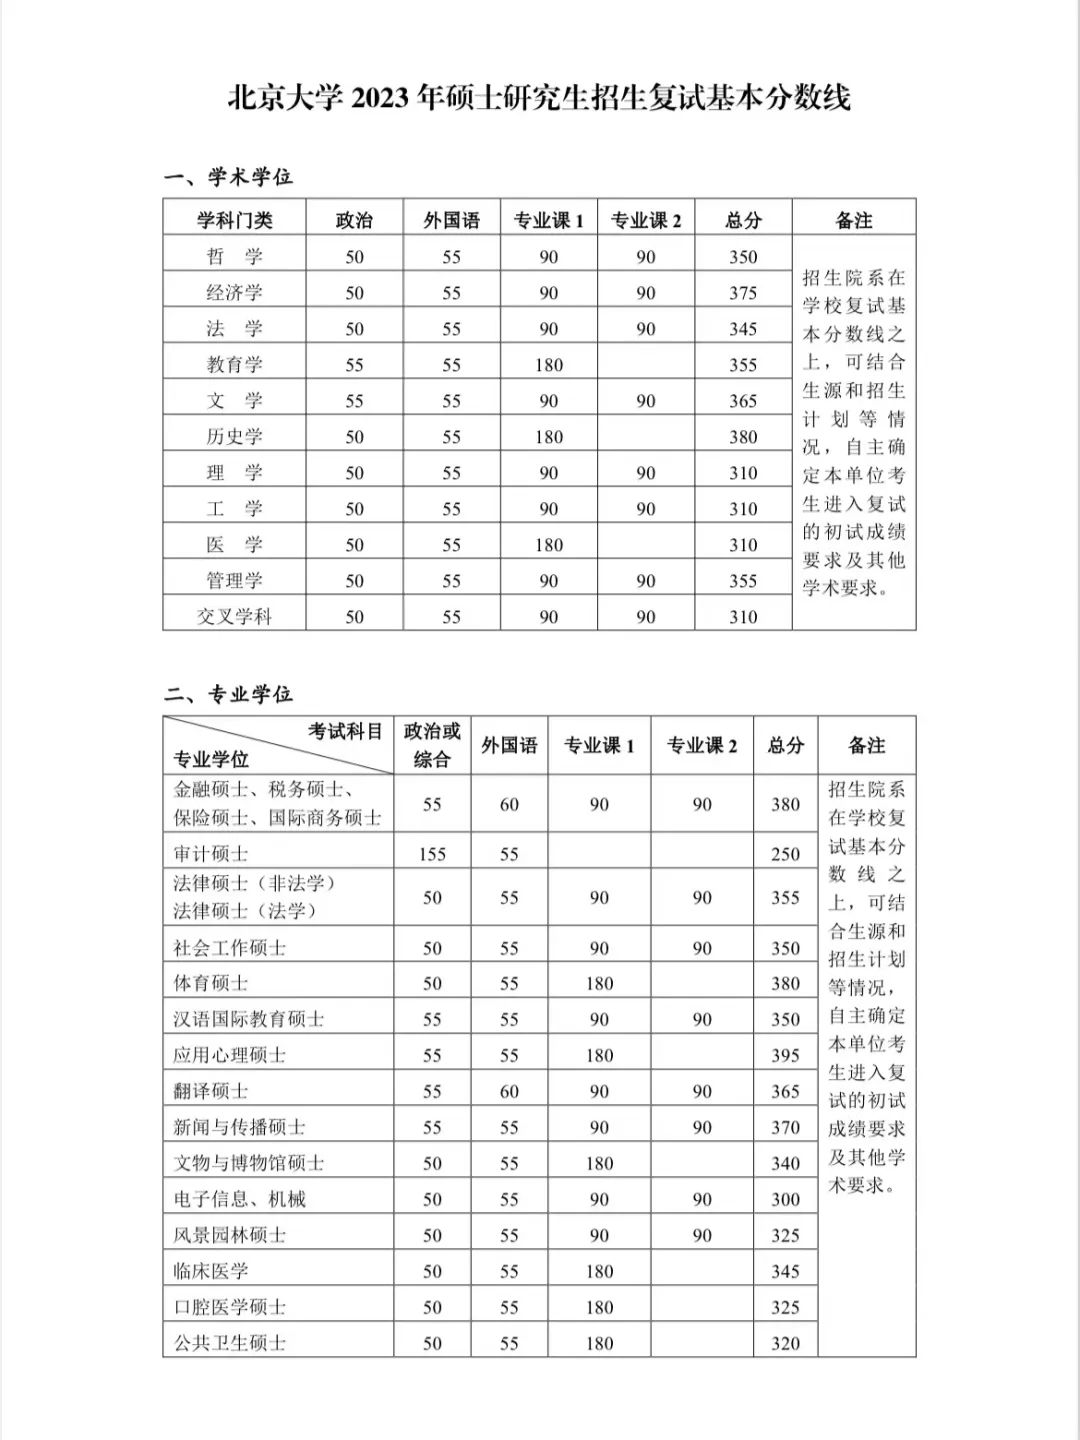 北京大学2023年硕士研究生招生考试复试分数线